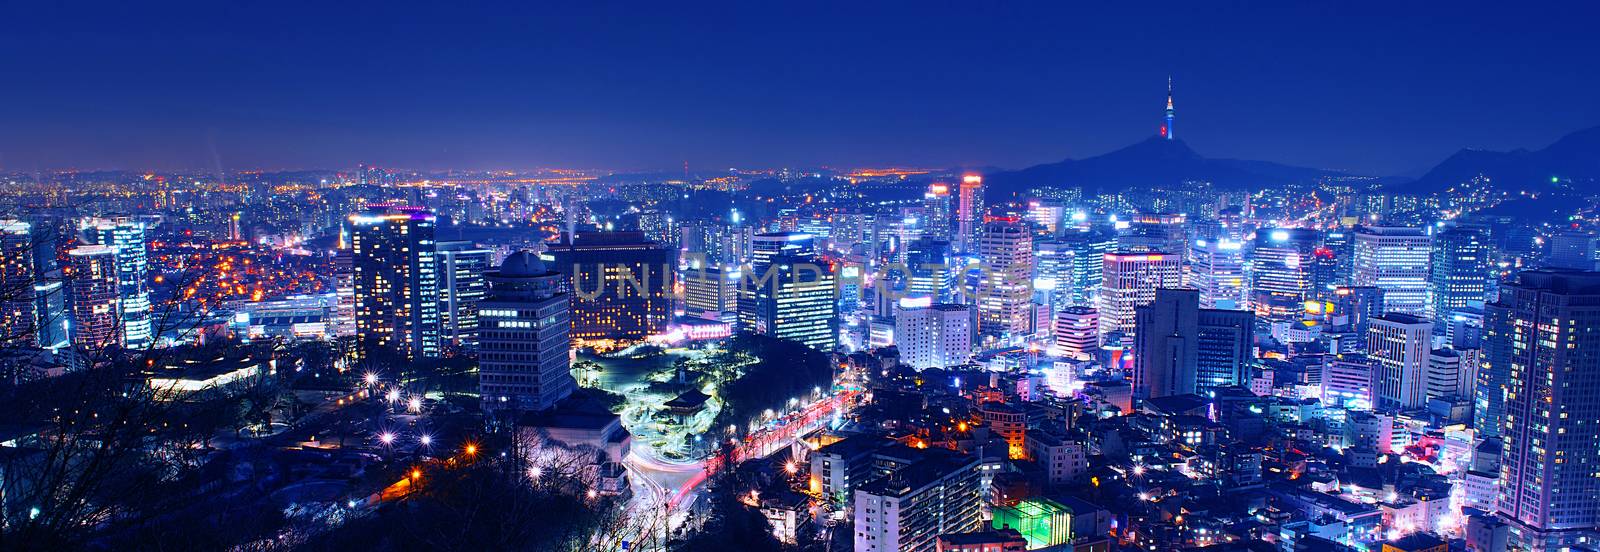 South Korea skyline at night.